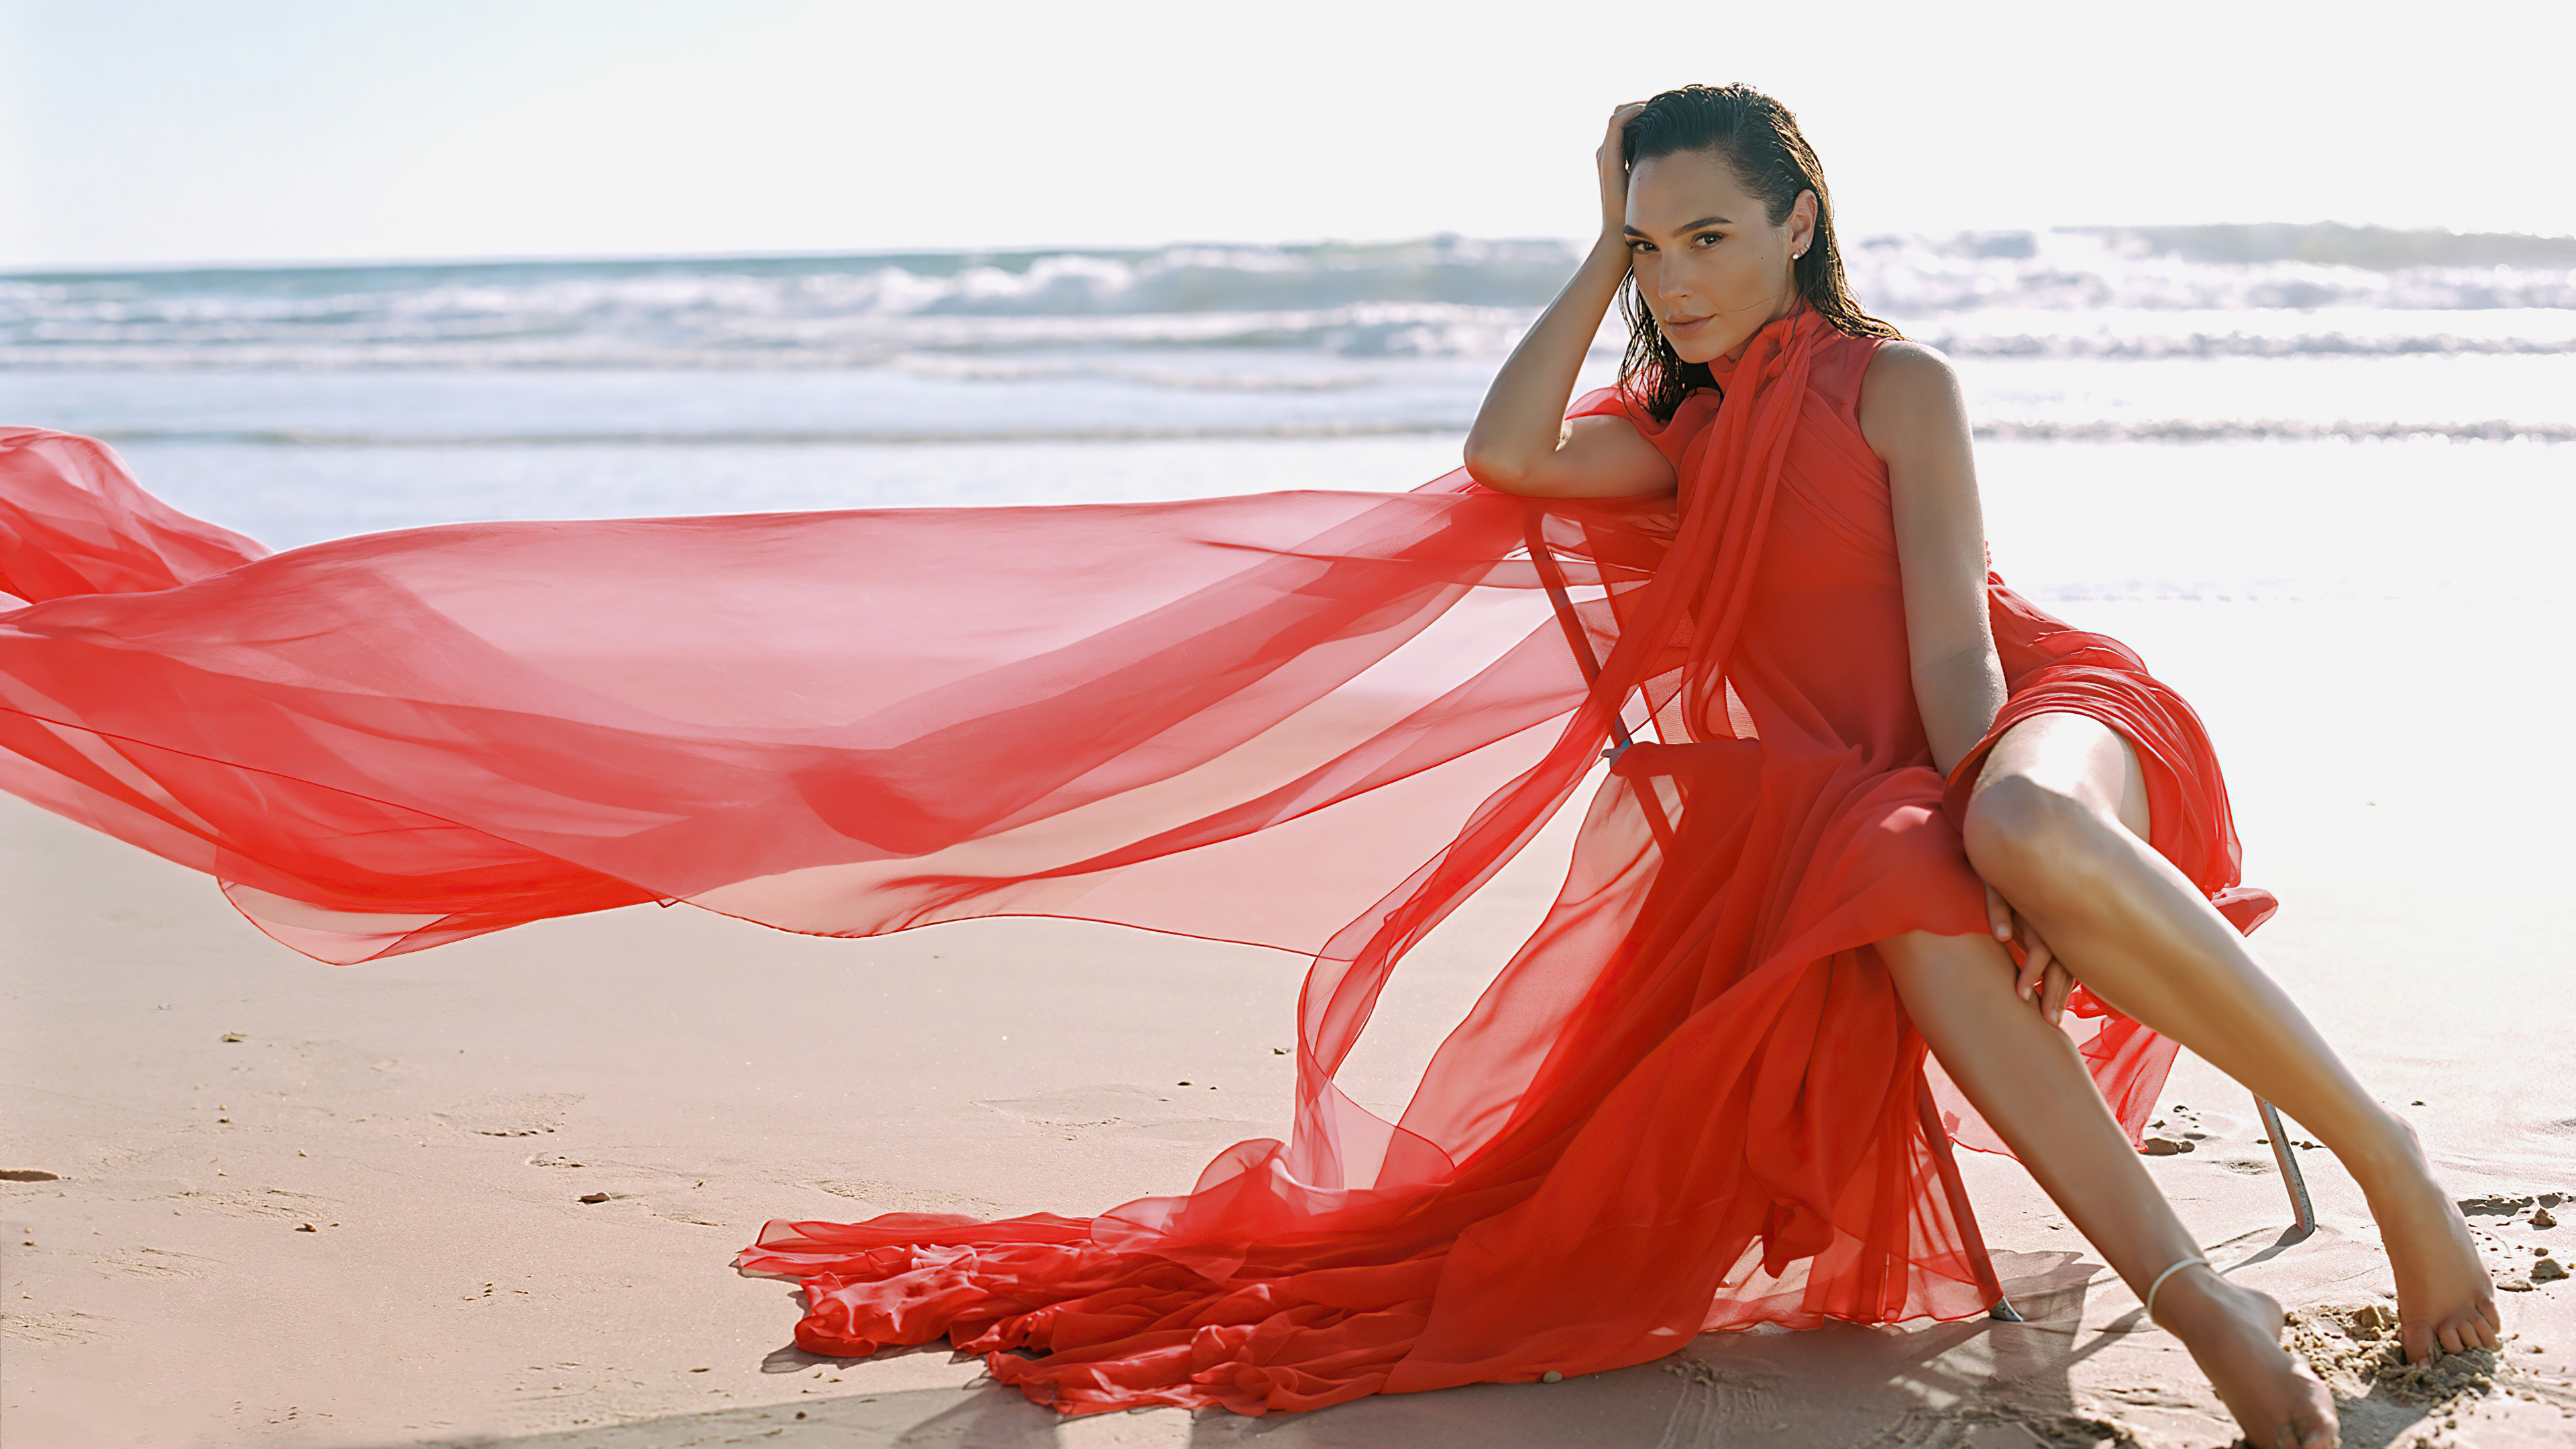 Gal Gadot Actress Brunette Beach Red Dress Legs Looking At Viewer Hand On Head 3840x2160